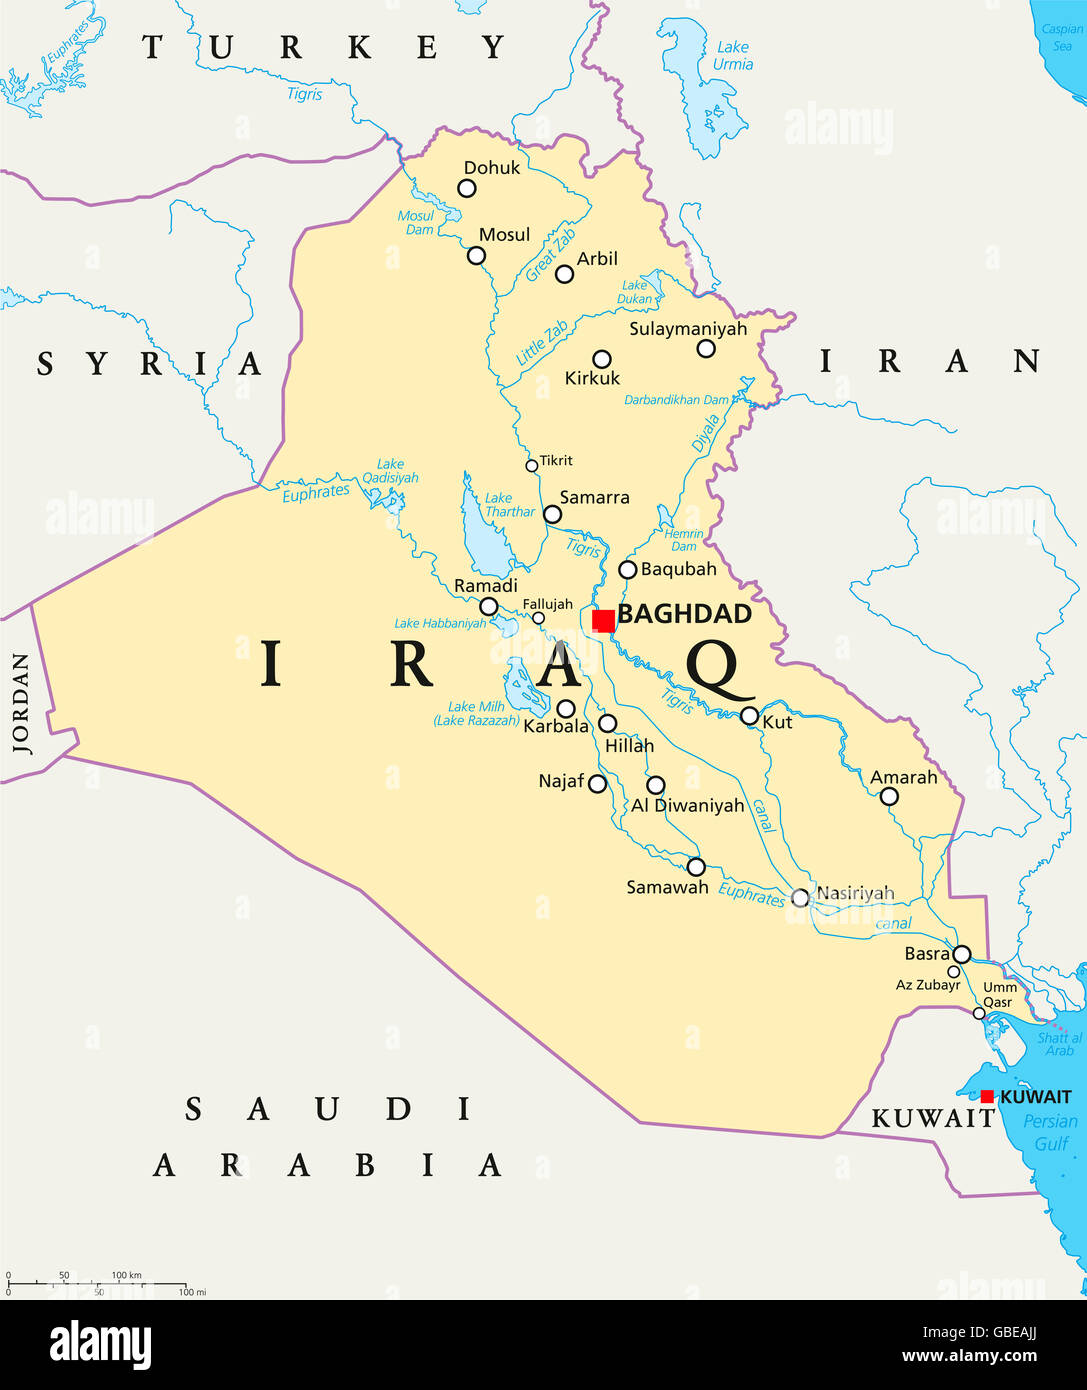 Irak politische Karte mit Hauptstadt Bagdad, Landesgrenzen, wichtige Städte, Flüsse und Seen. Auch Mesopotamien genannt. Stockfoto